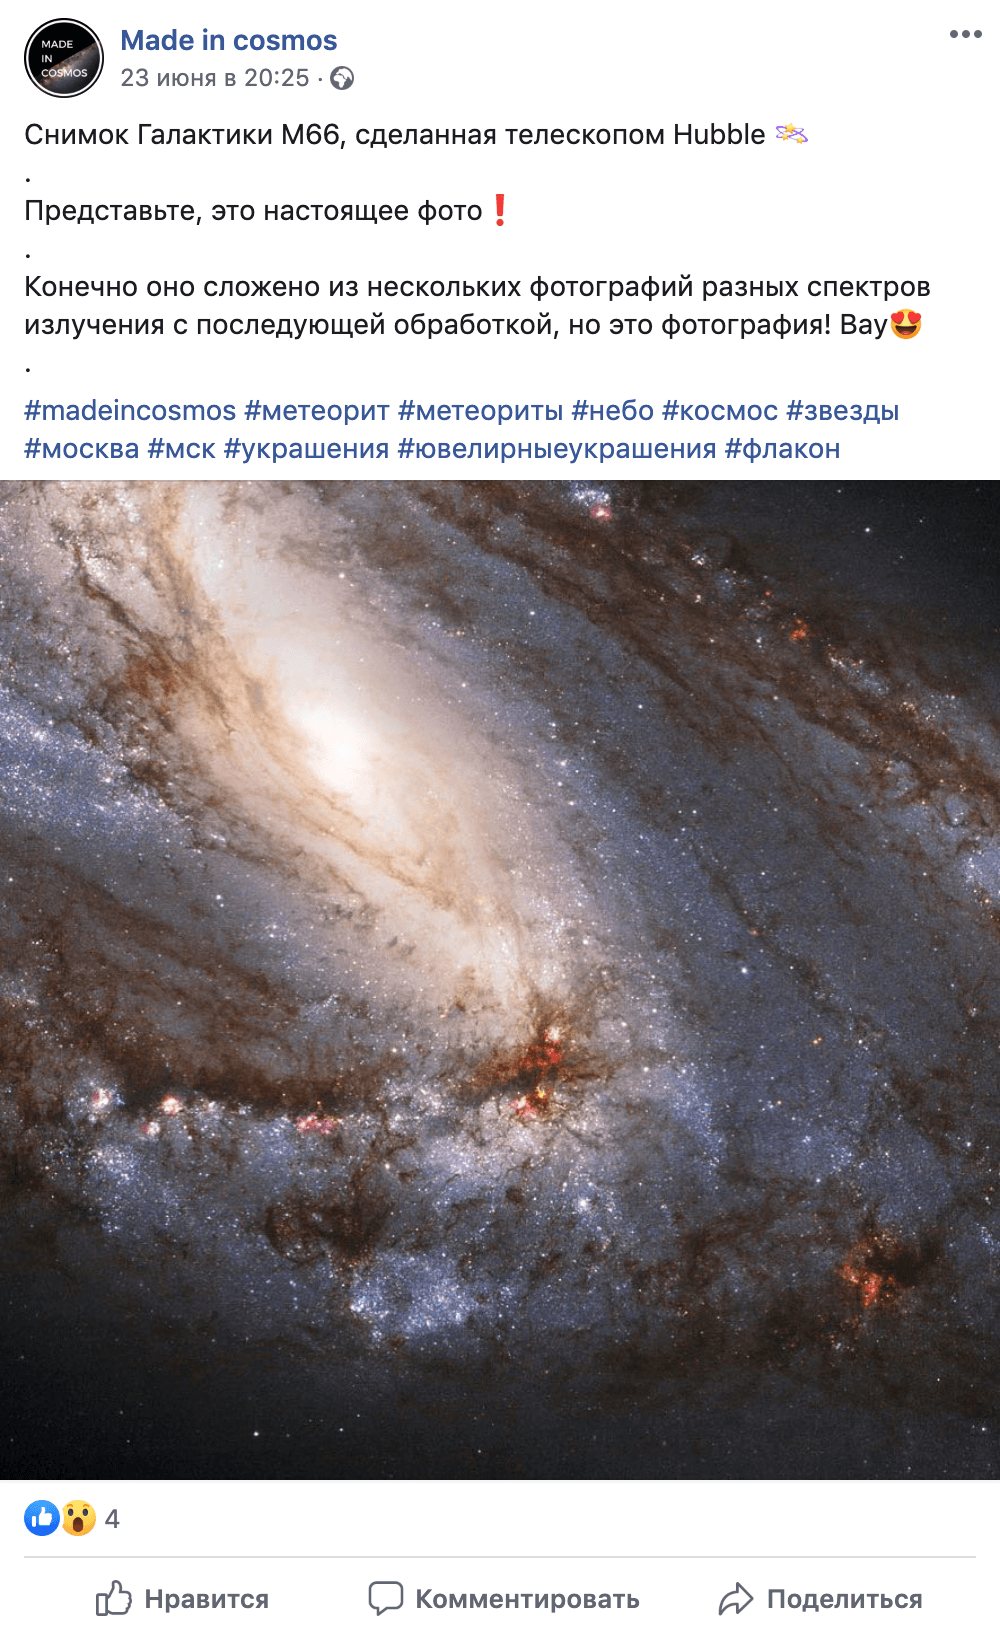 В фейсбуке компании фотографии новых украшений соседствуют с новостями про изучение галактики